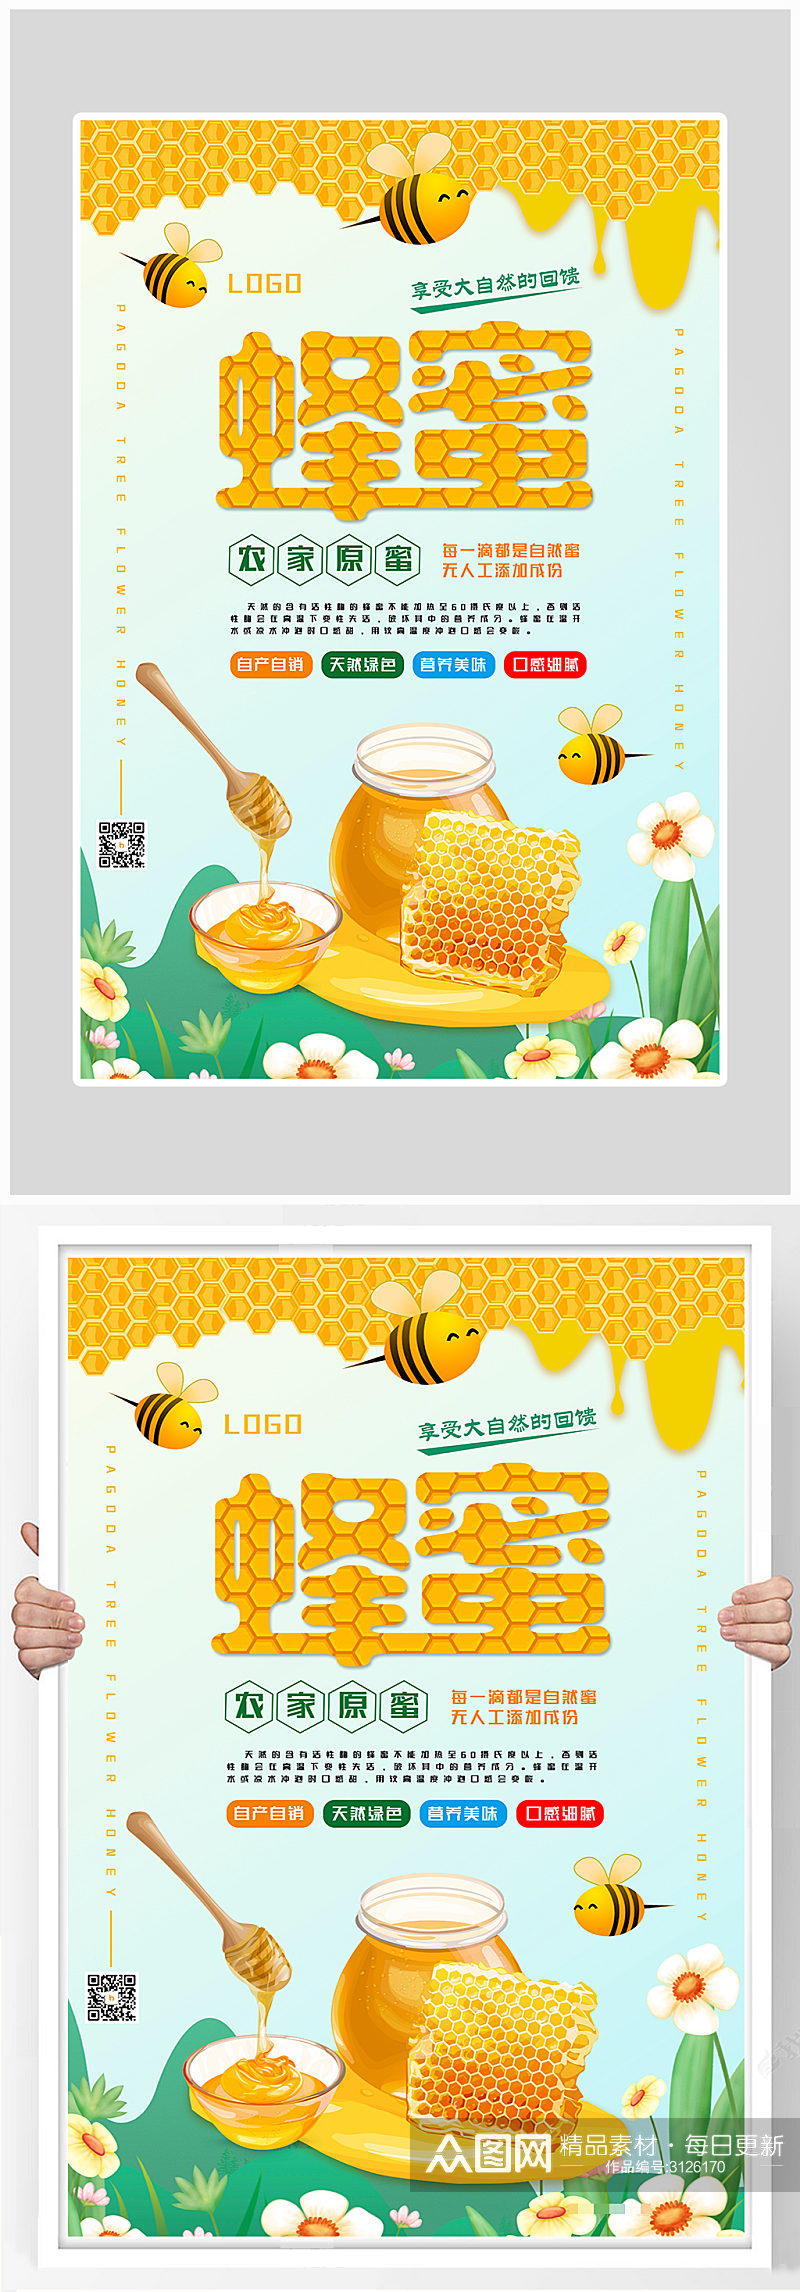 创意质感蜂蜜海报设计素材